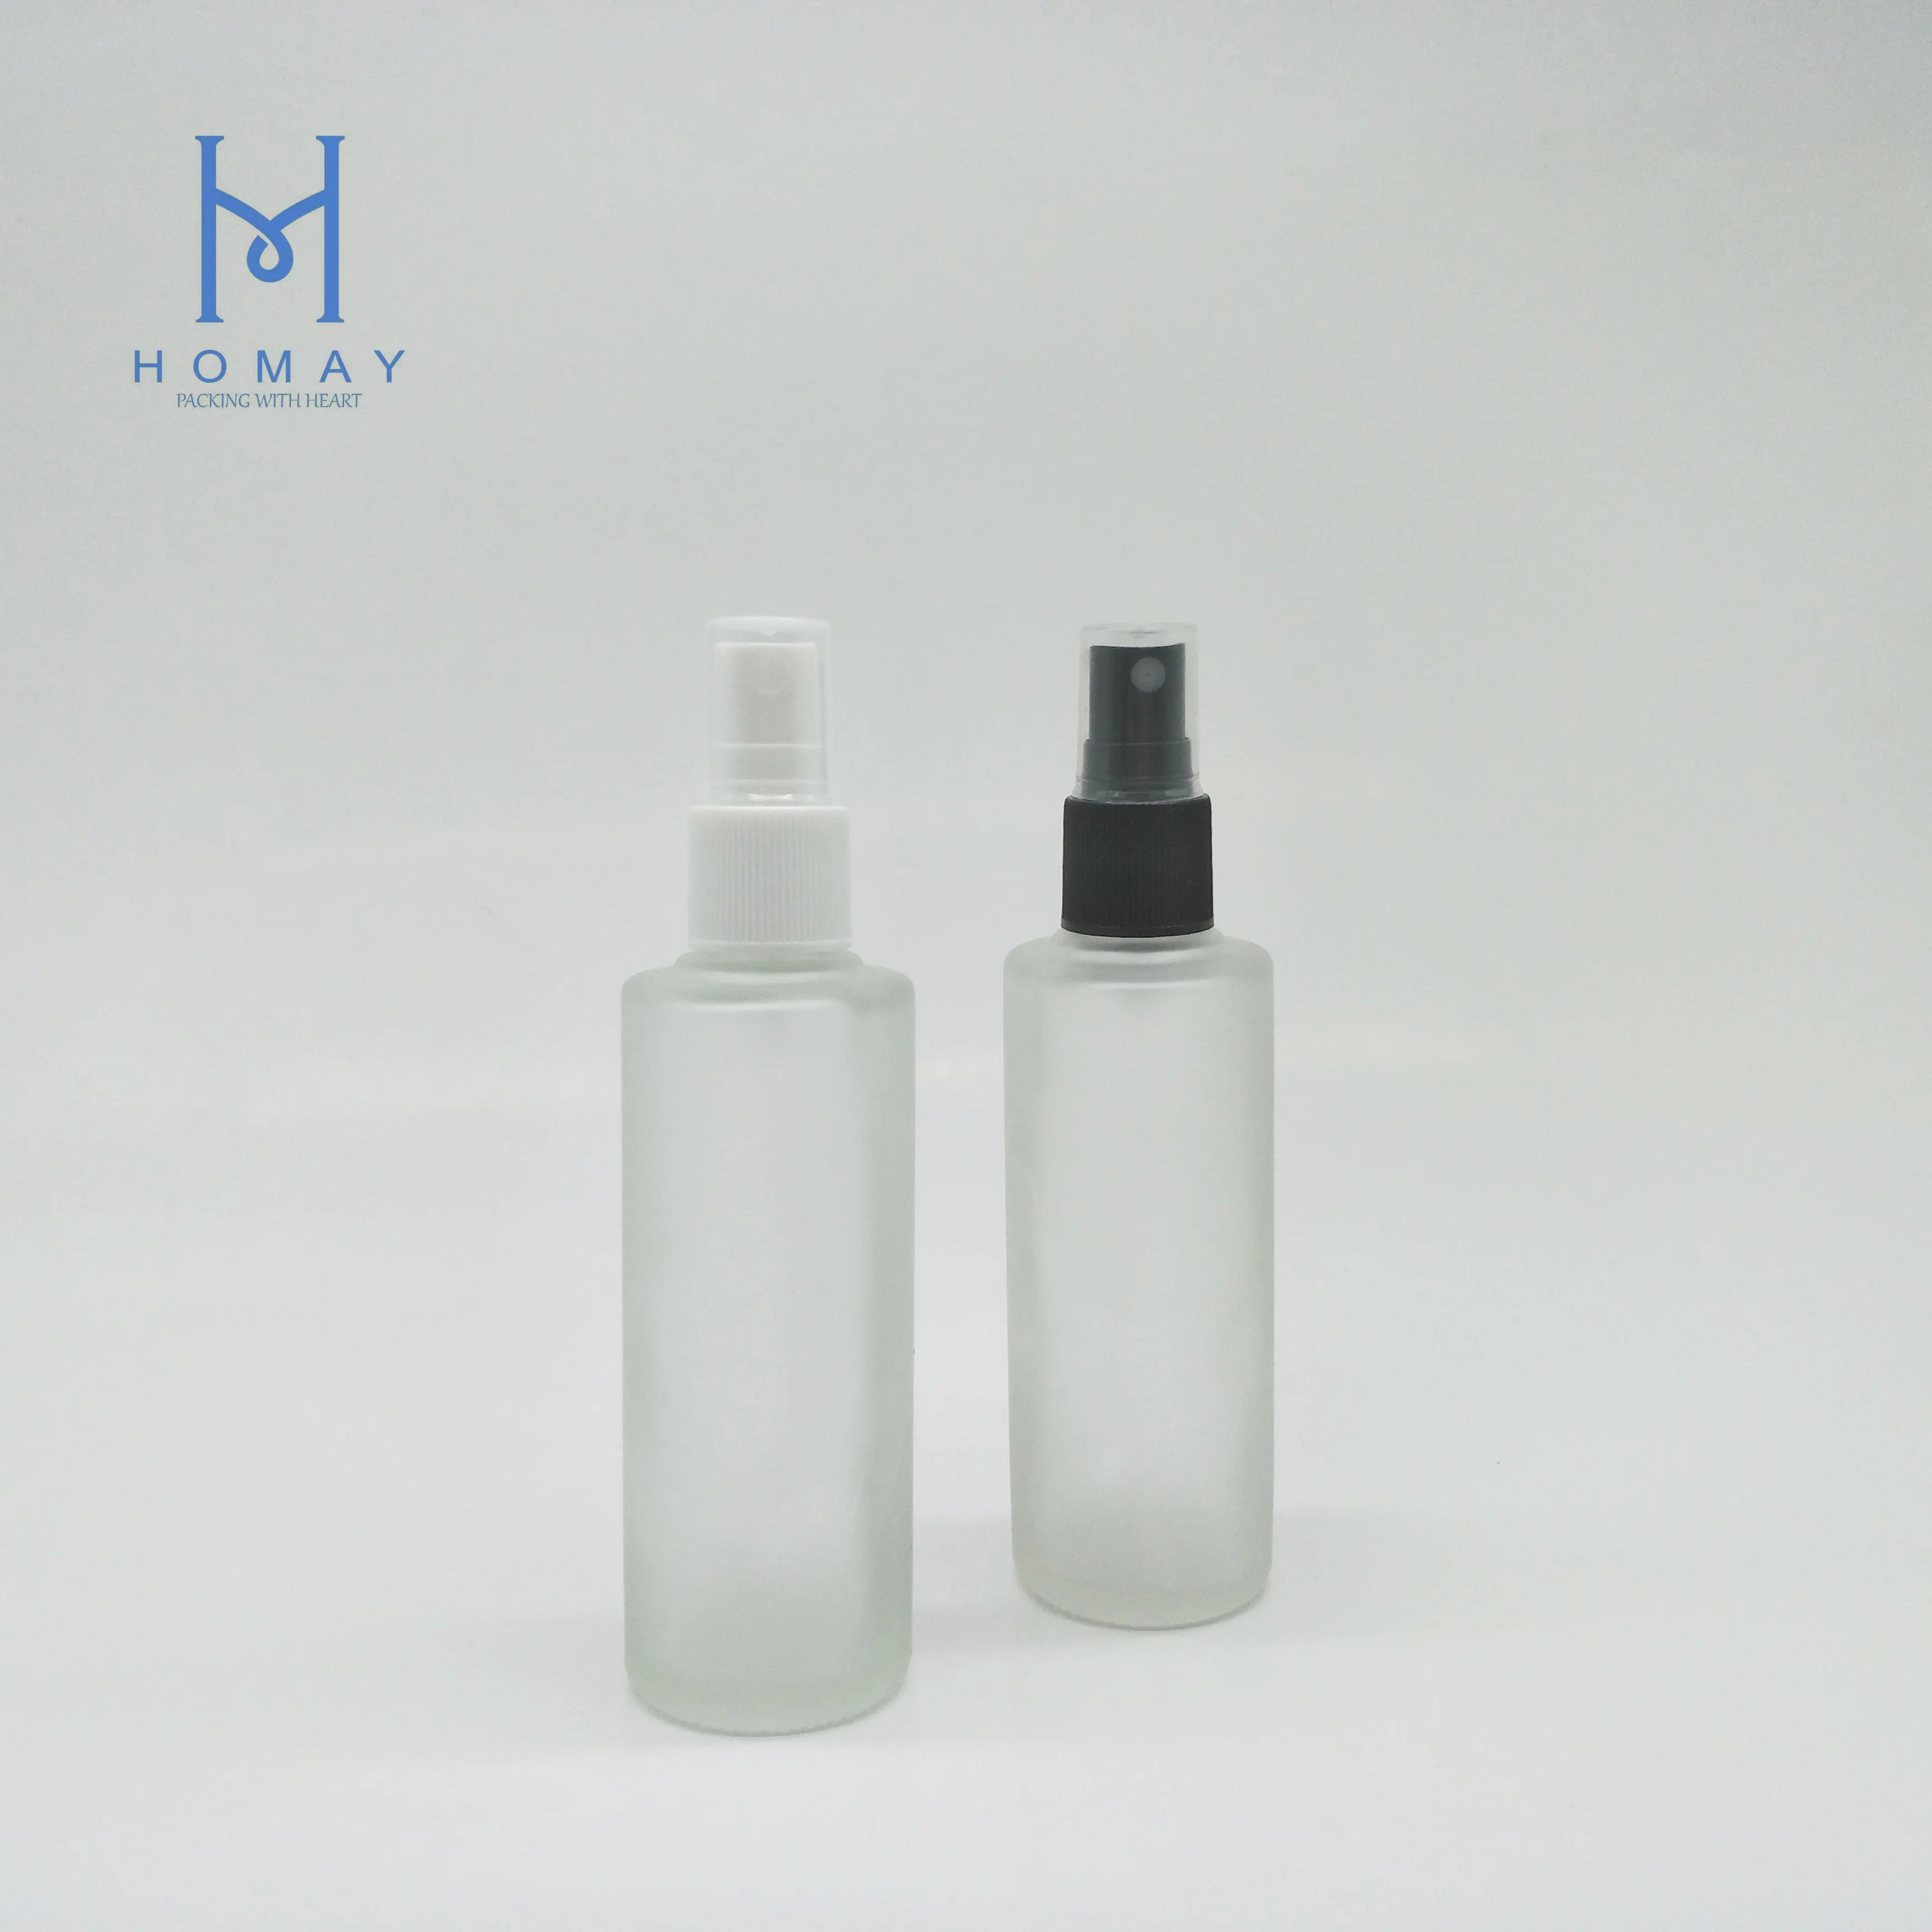 Imballaggio HOMAY miglior prezzo chiaro 85ml smerigliato bottiglie di vetro di profumo rotondo con pompa spray